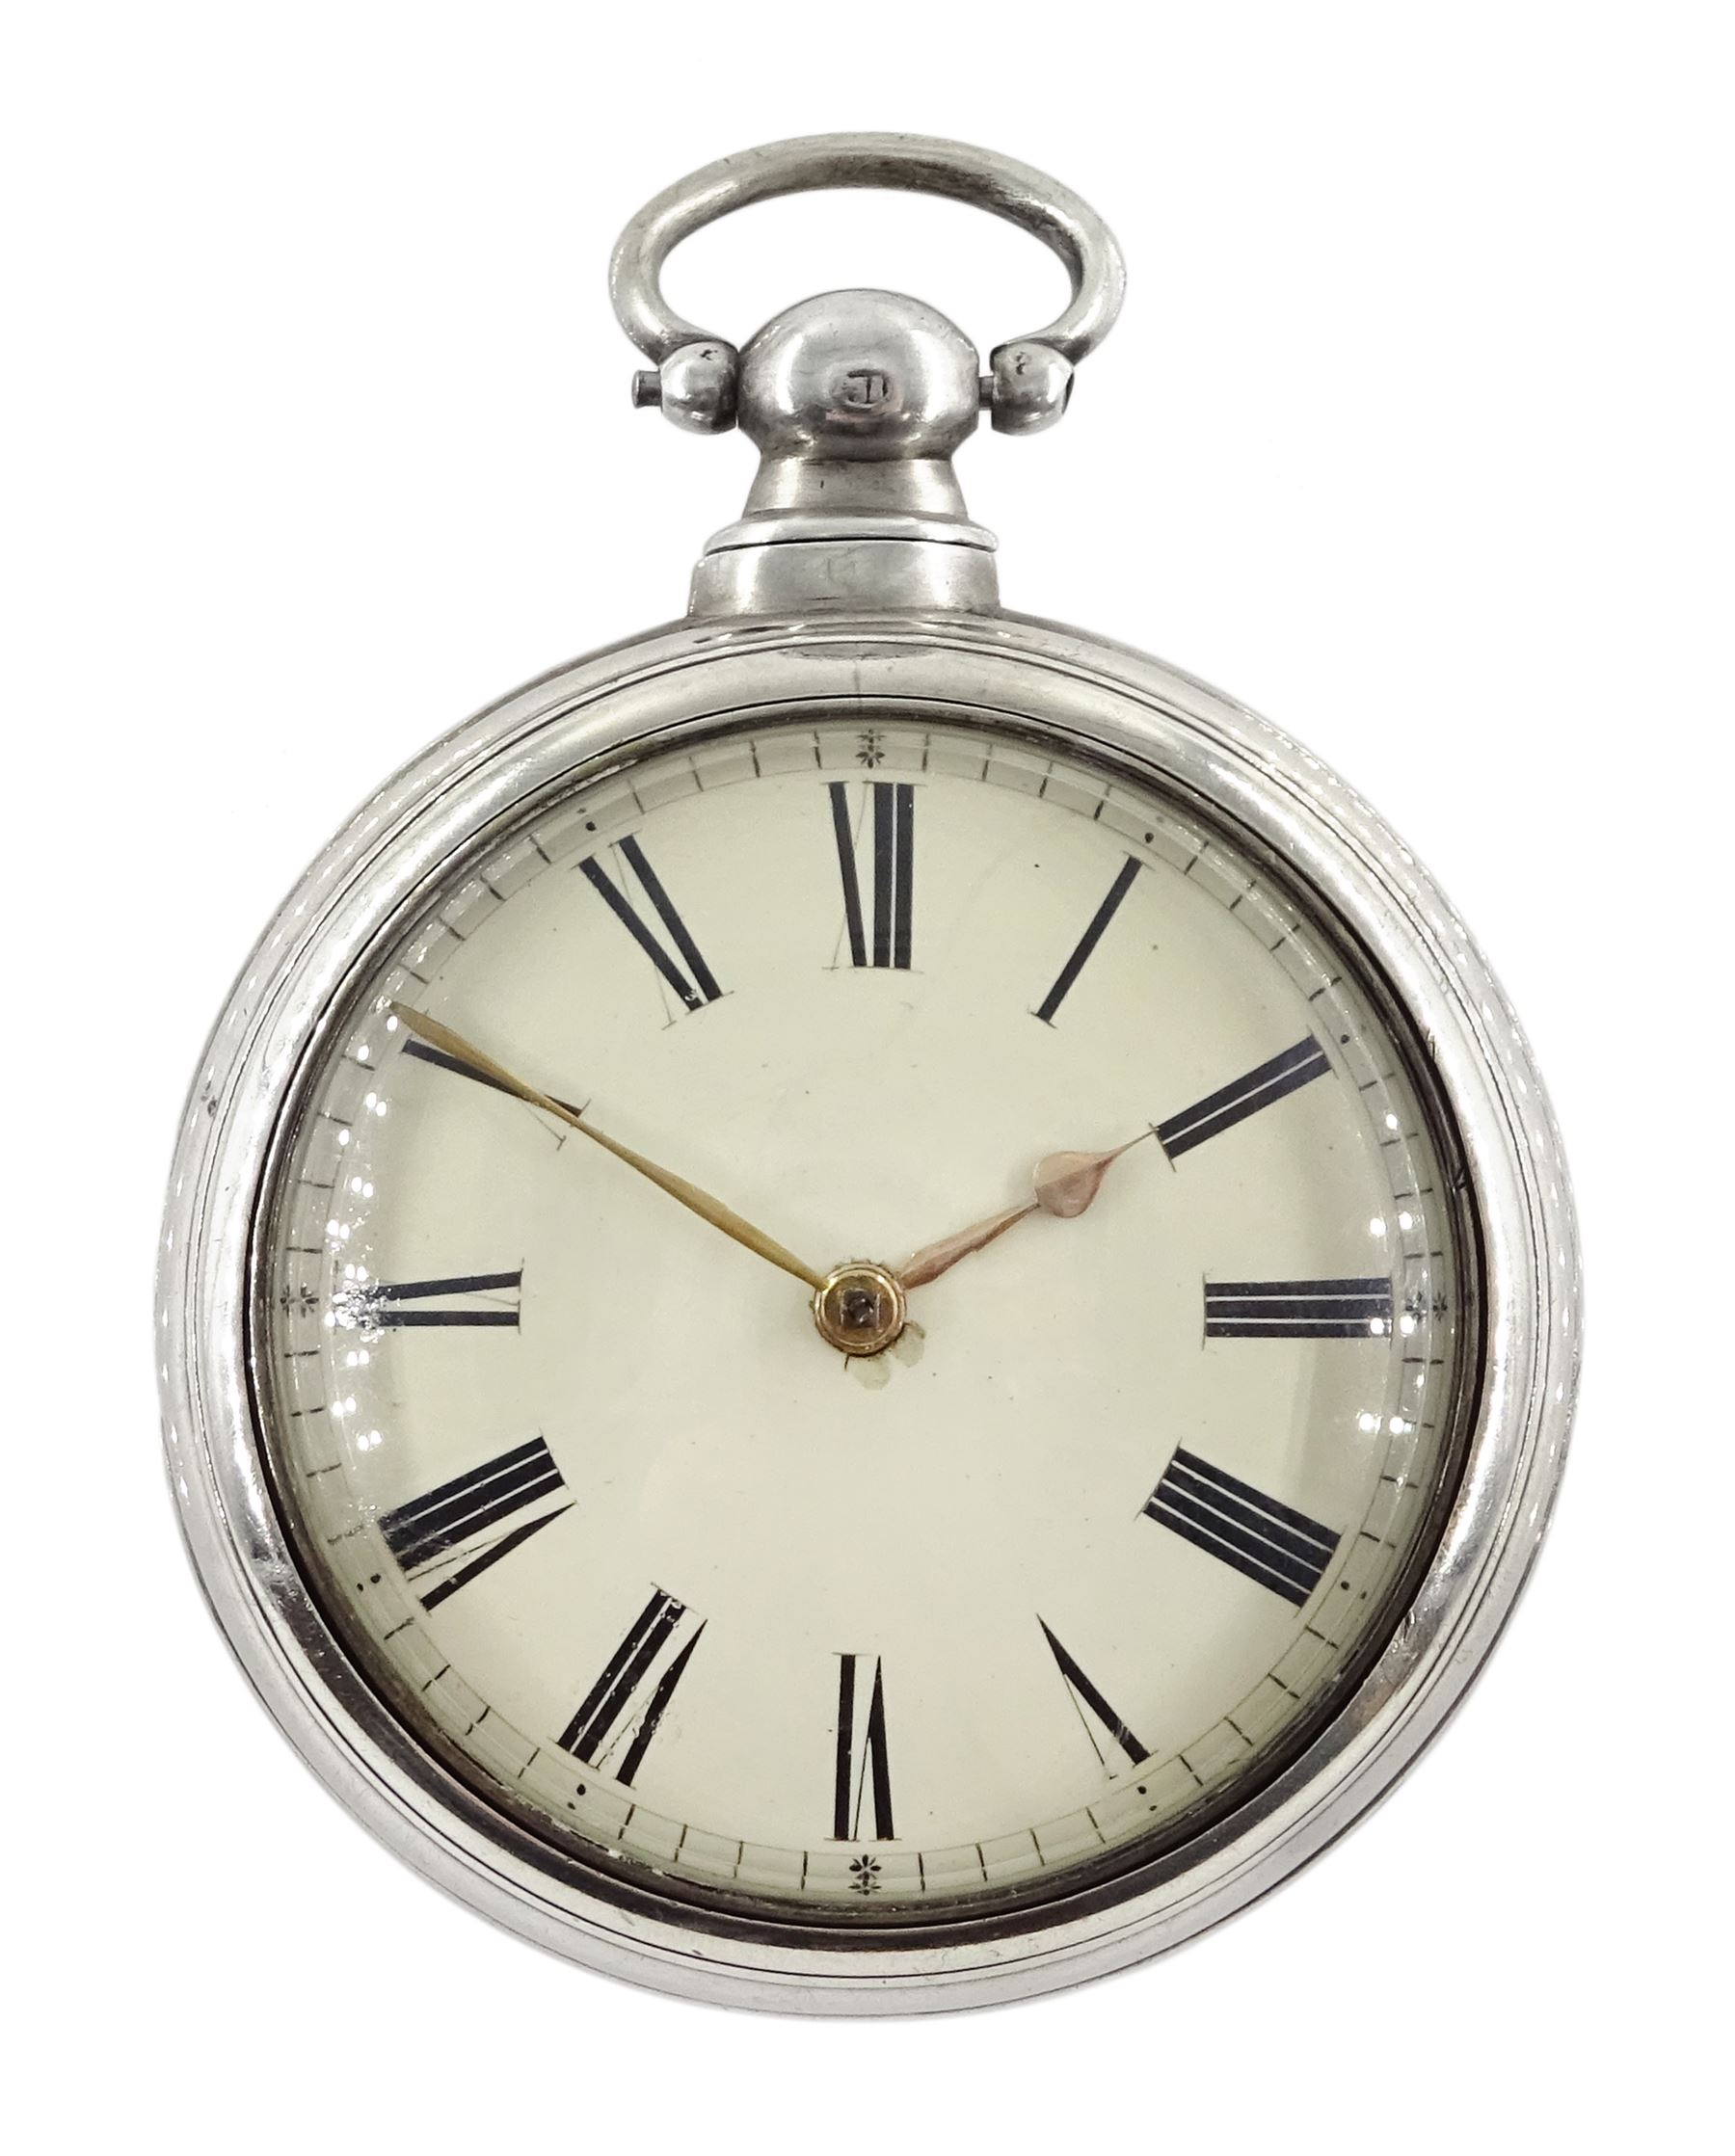 Victorian silver pair cased pocket watch by William Smith, Huddersfield, No. 533, round pillars, pie